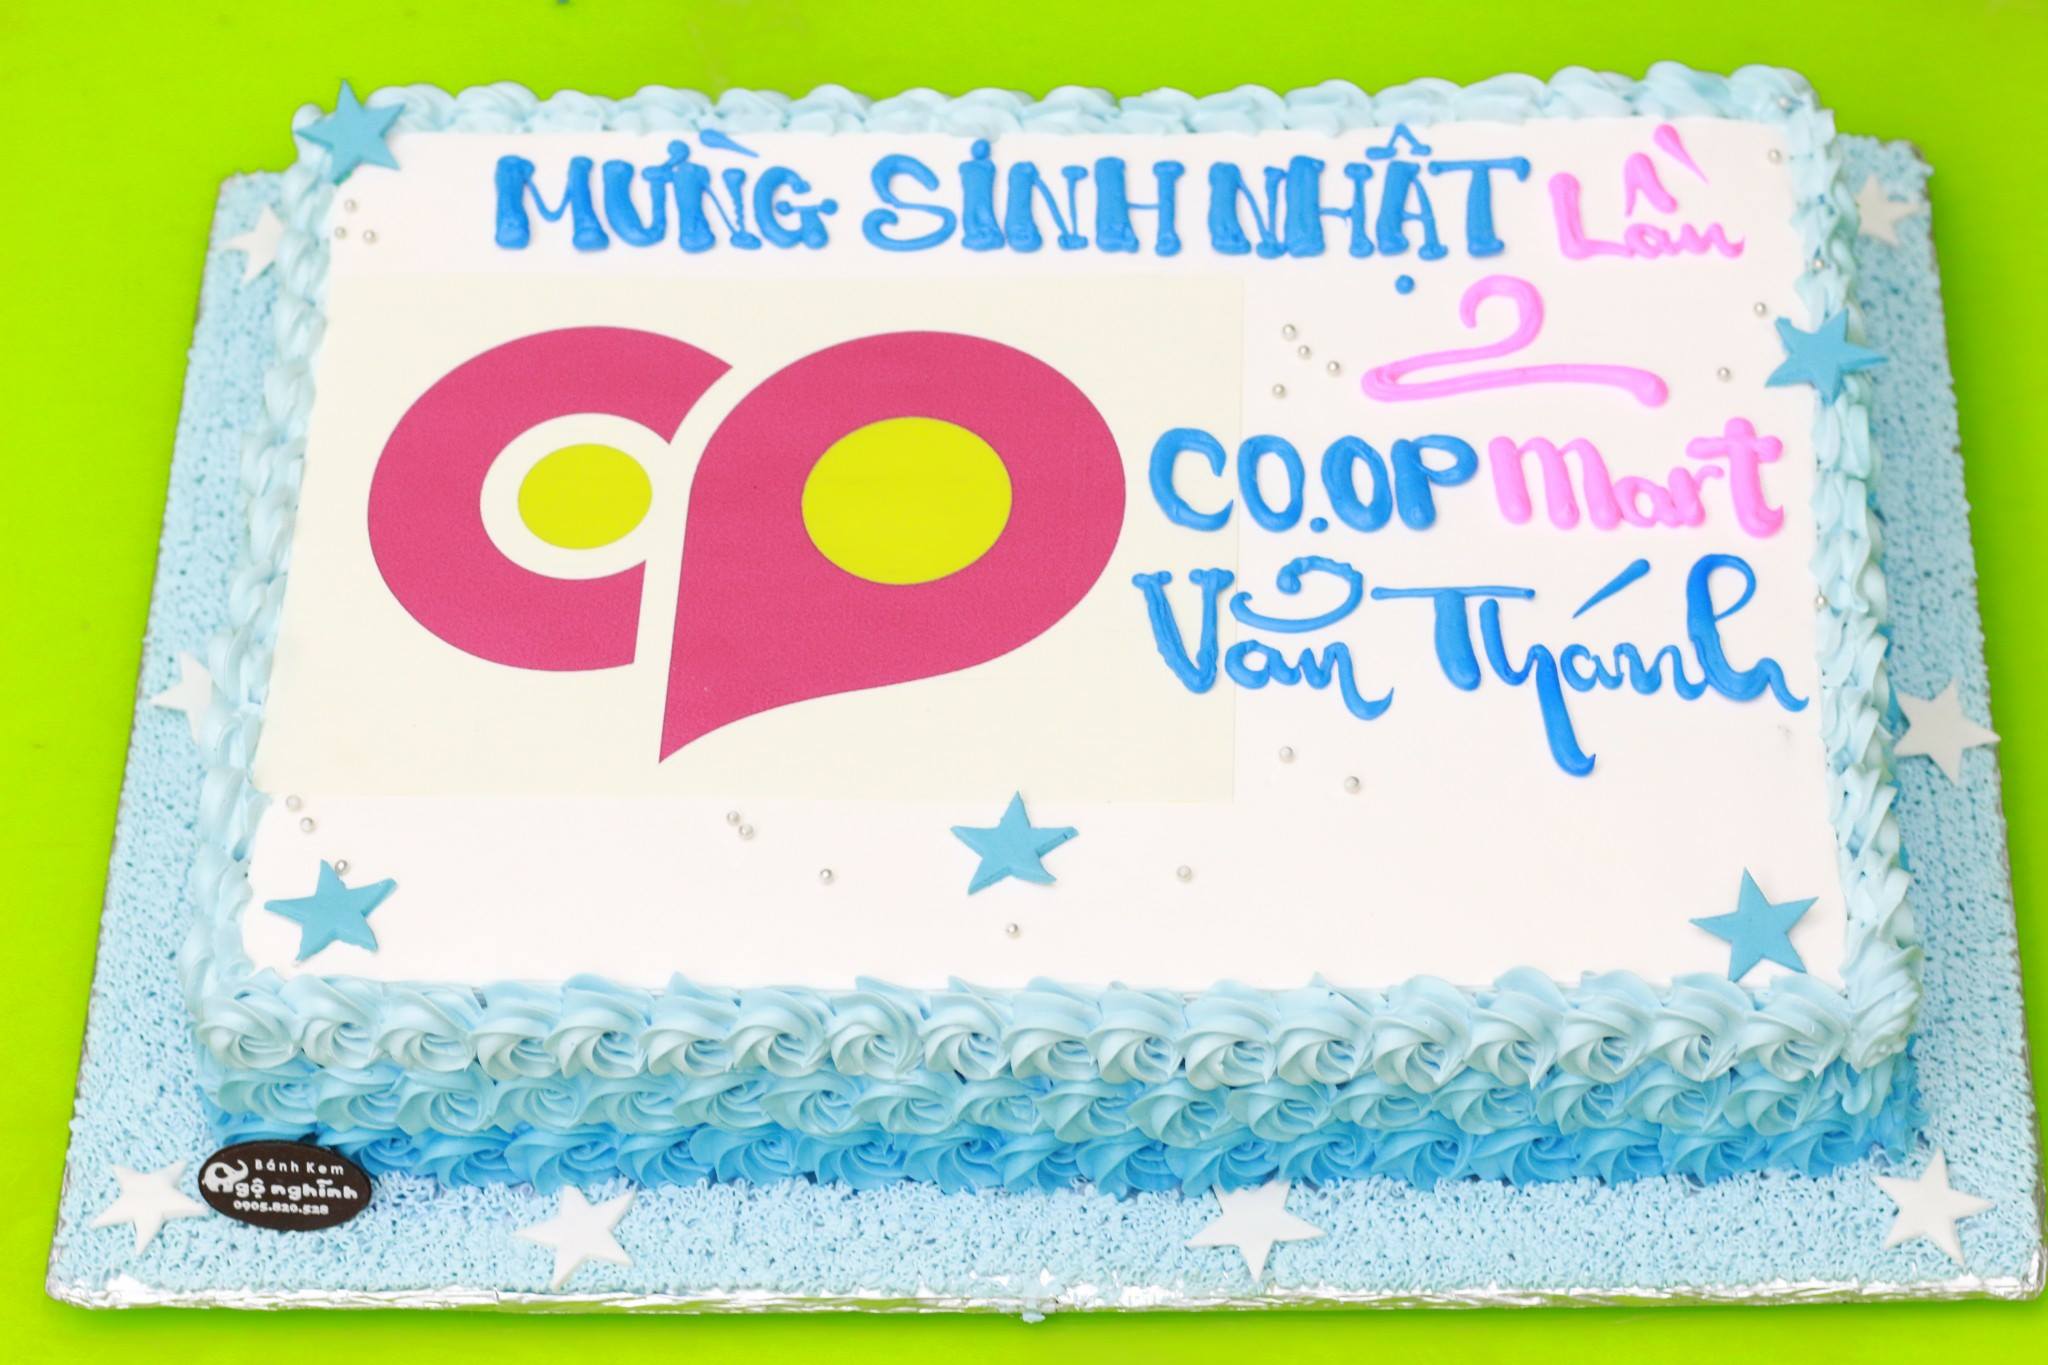 Hệ thống Coopmart siêu giảm giá nhân dịp sinh nhật lần thứ 27